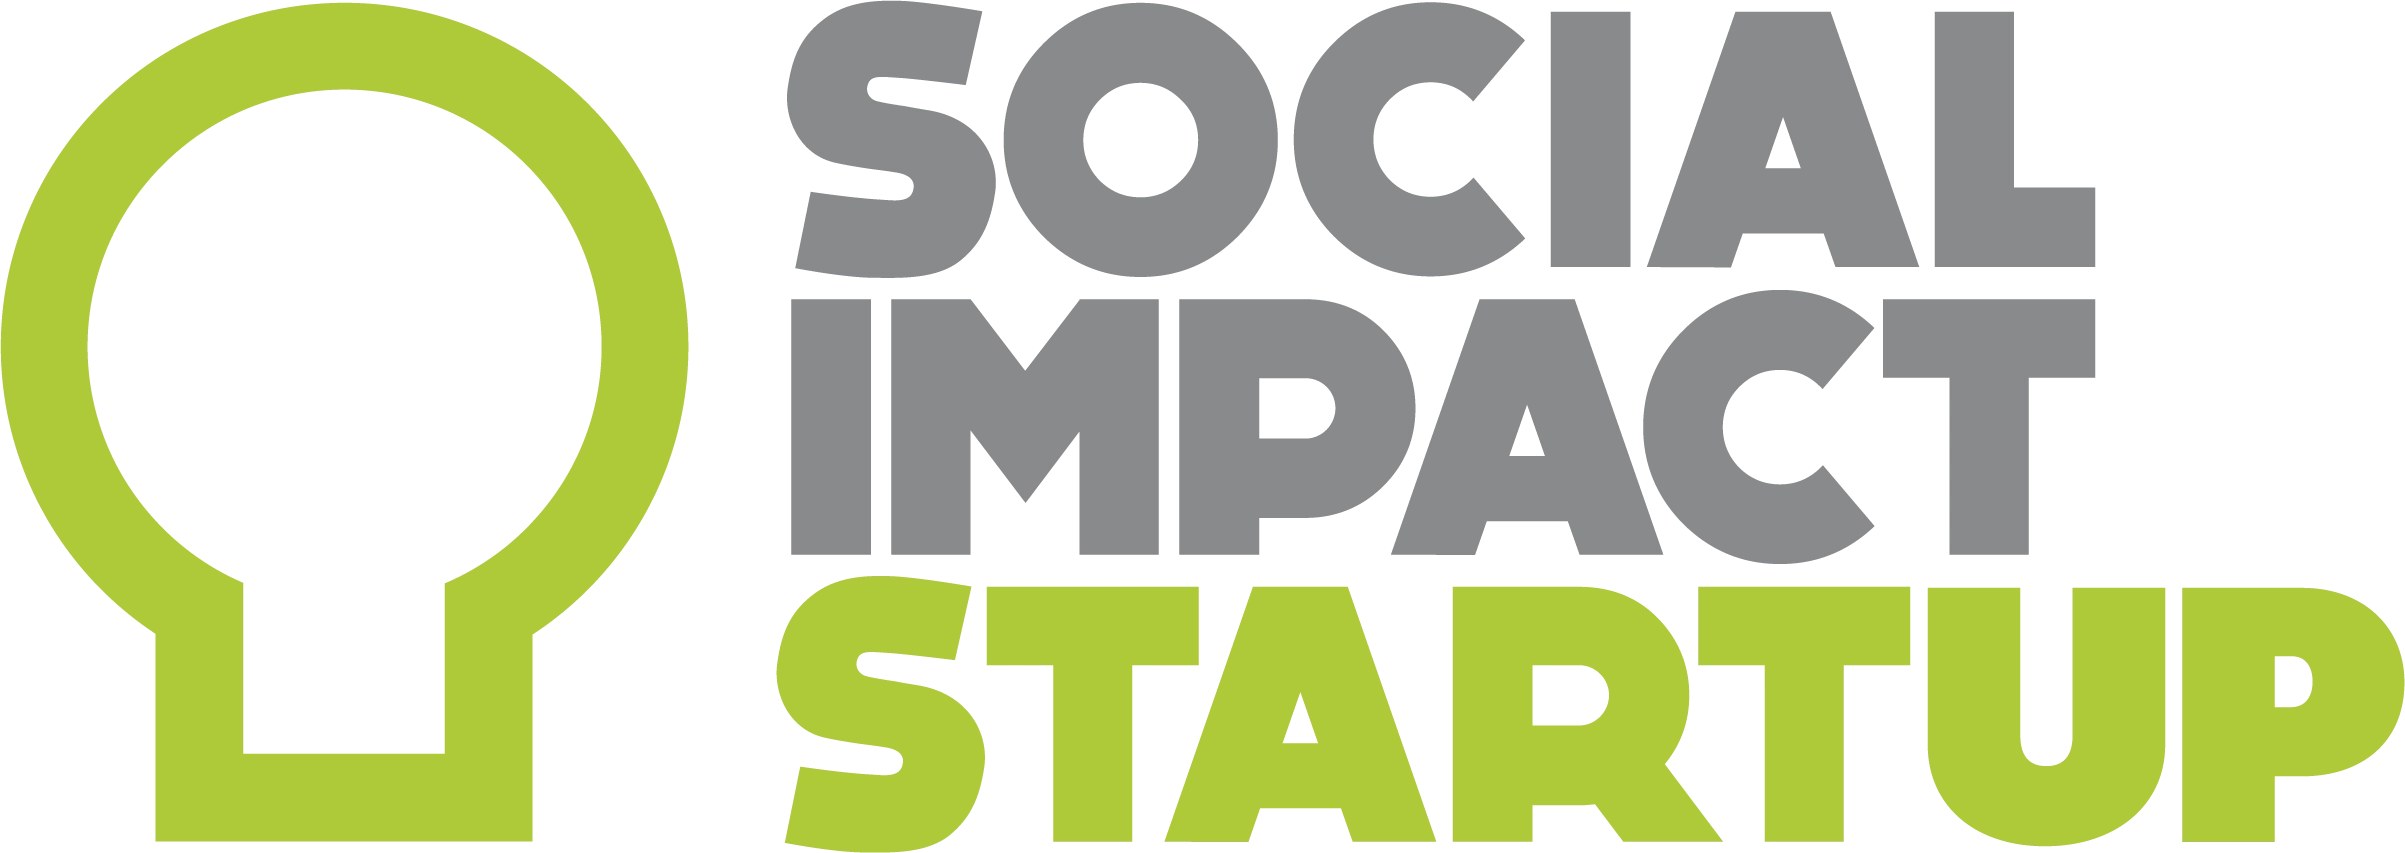 social impact lab logo